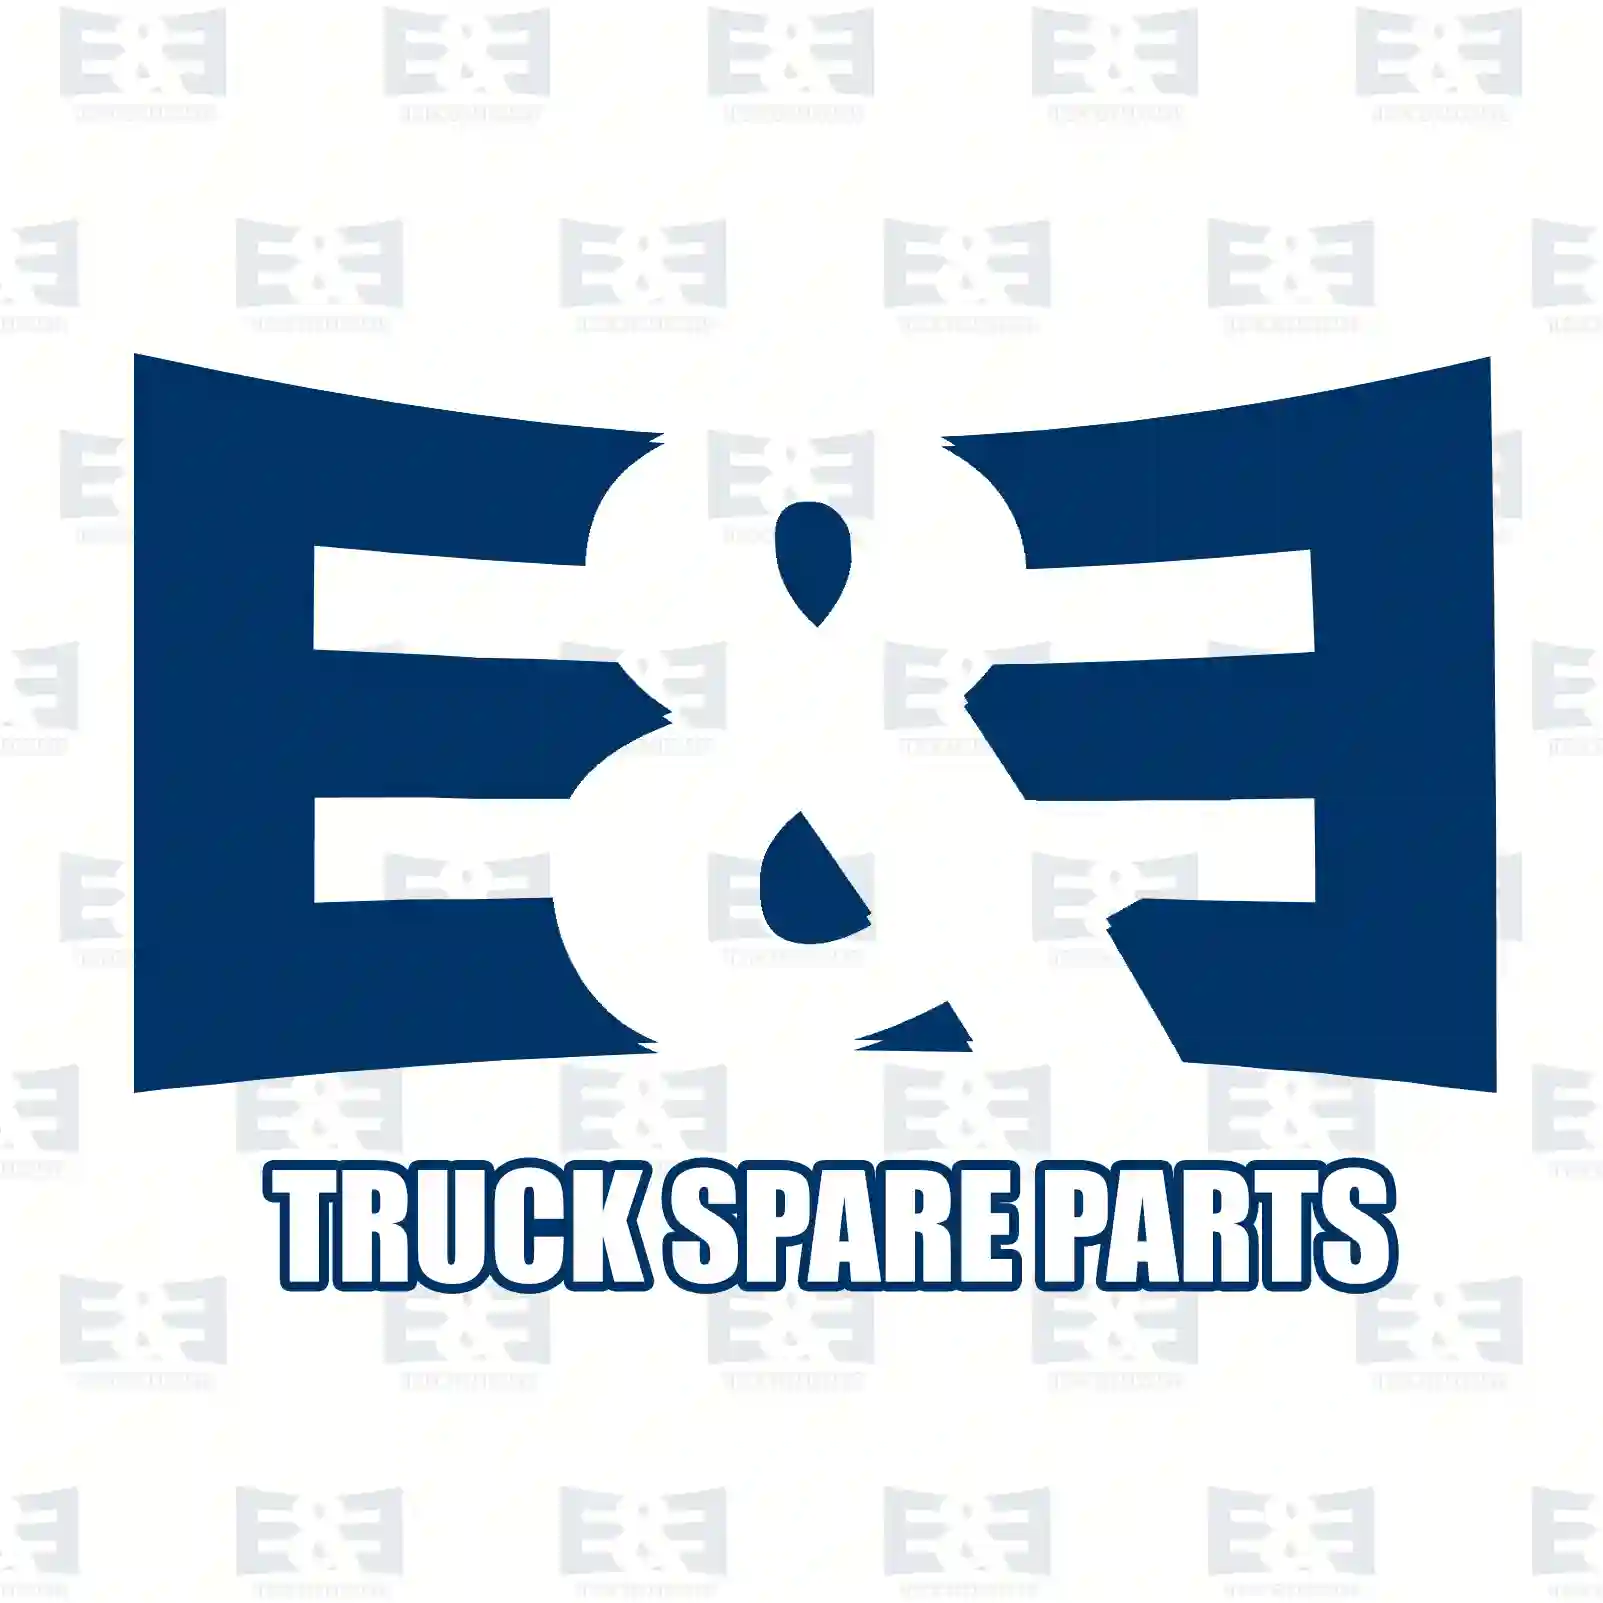 Oil seal, 2E2279578, 1343372, ZG02603-0008, , ||  2E2279578 E&E Truck Spare Parts | Truck Spare Parts, Auotomotive Spare Parts Oil seal, 2E2279578, 1343372, ZG02603-0008, , ||  2E2279578 E&E Truck Spare Parts | Truck Spare Parts, Auotomotive Spare Parts